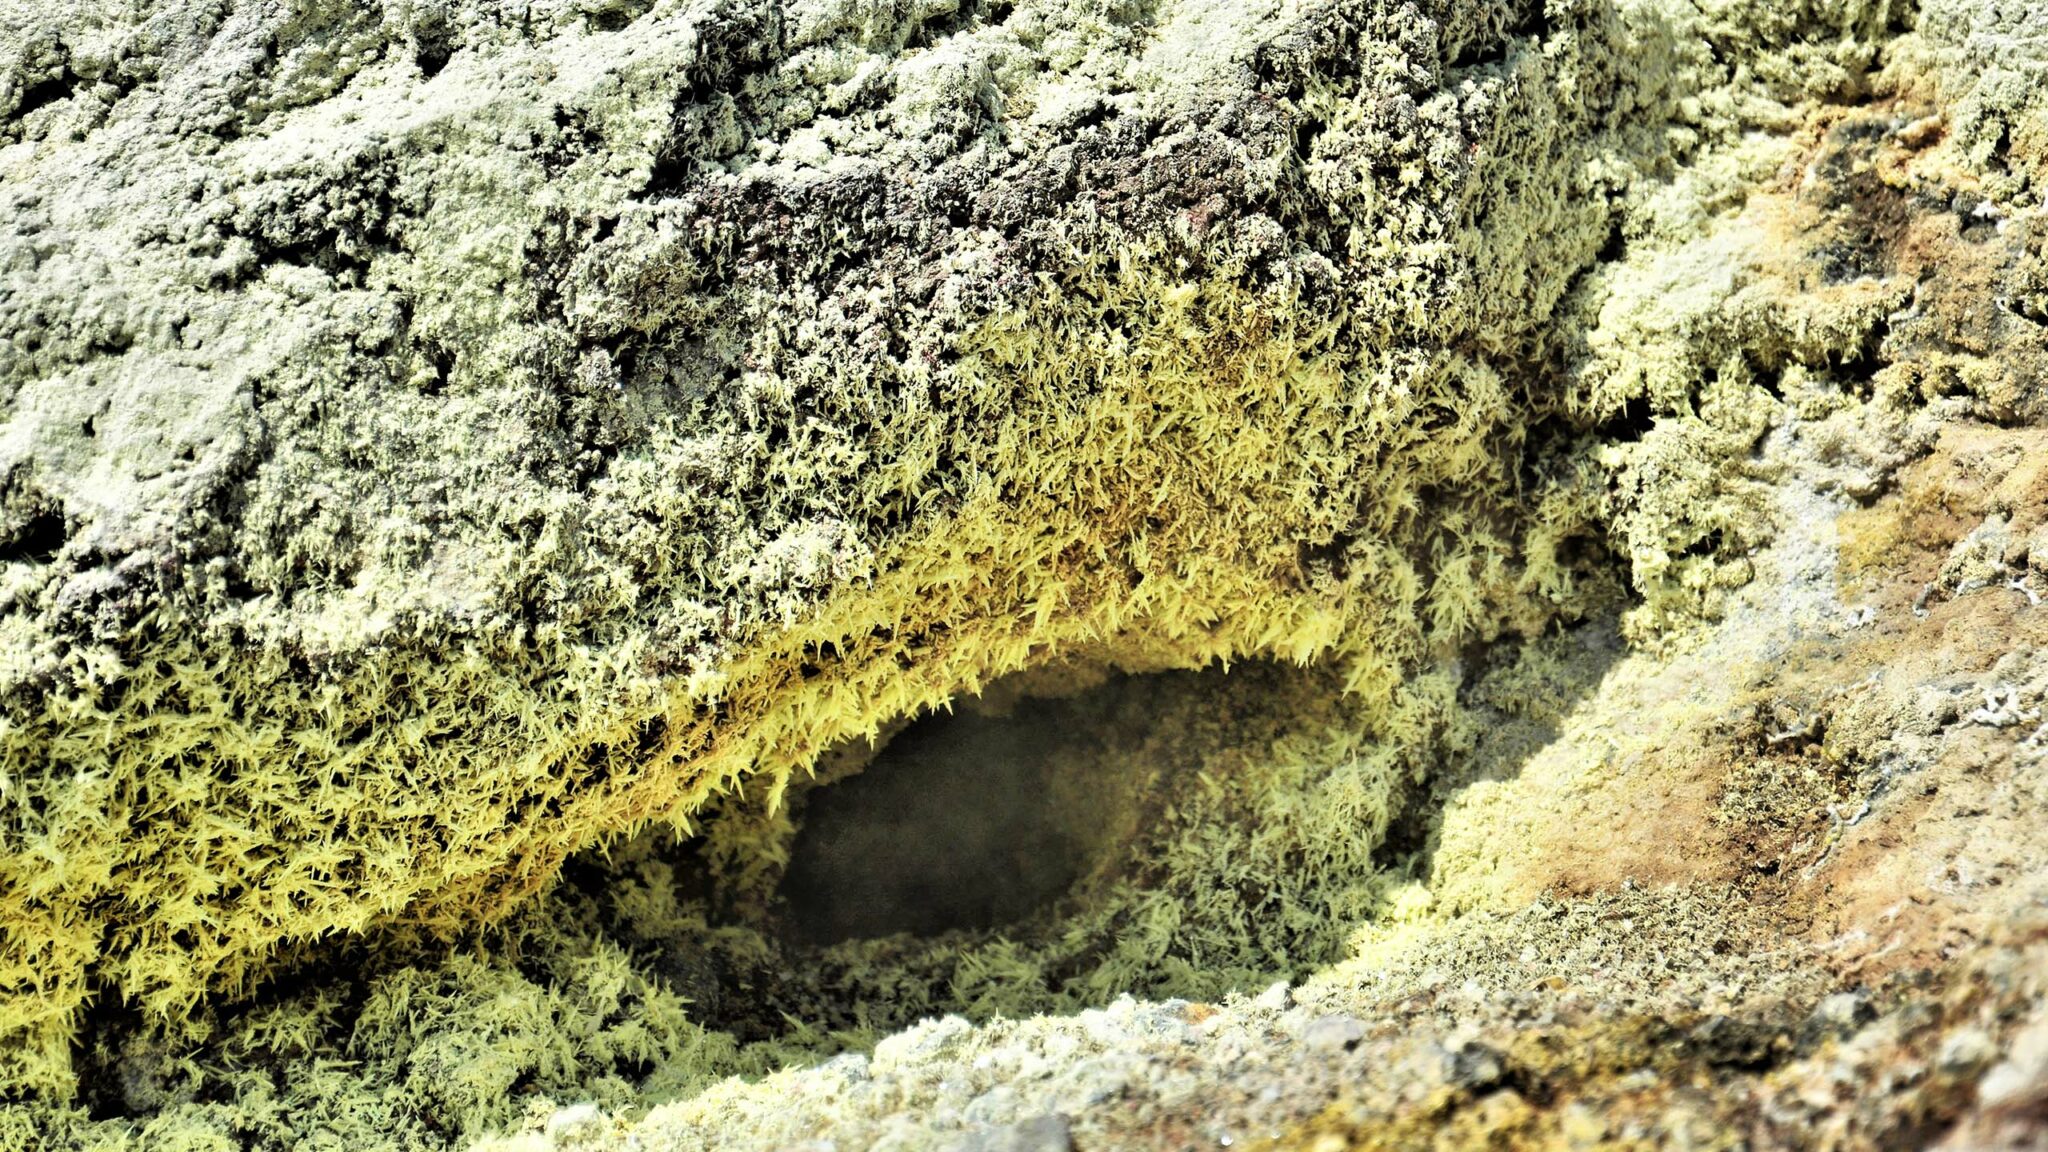 Sulphur crystals in fumarole: Astonishing sulphur crystals around a fumarole of Georgios crater